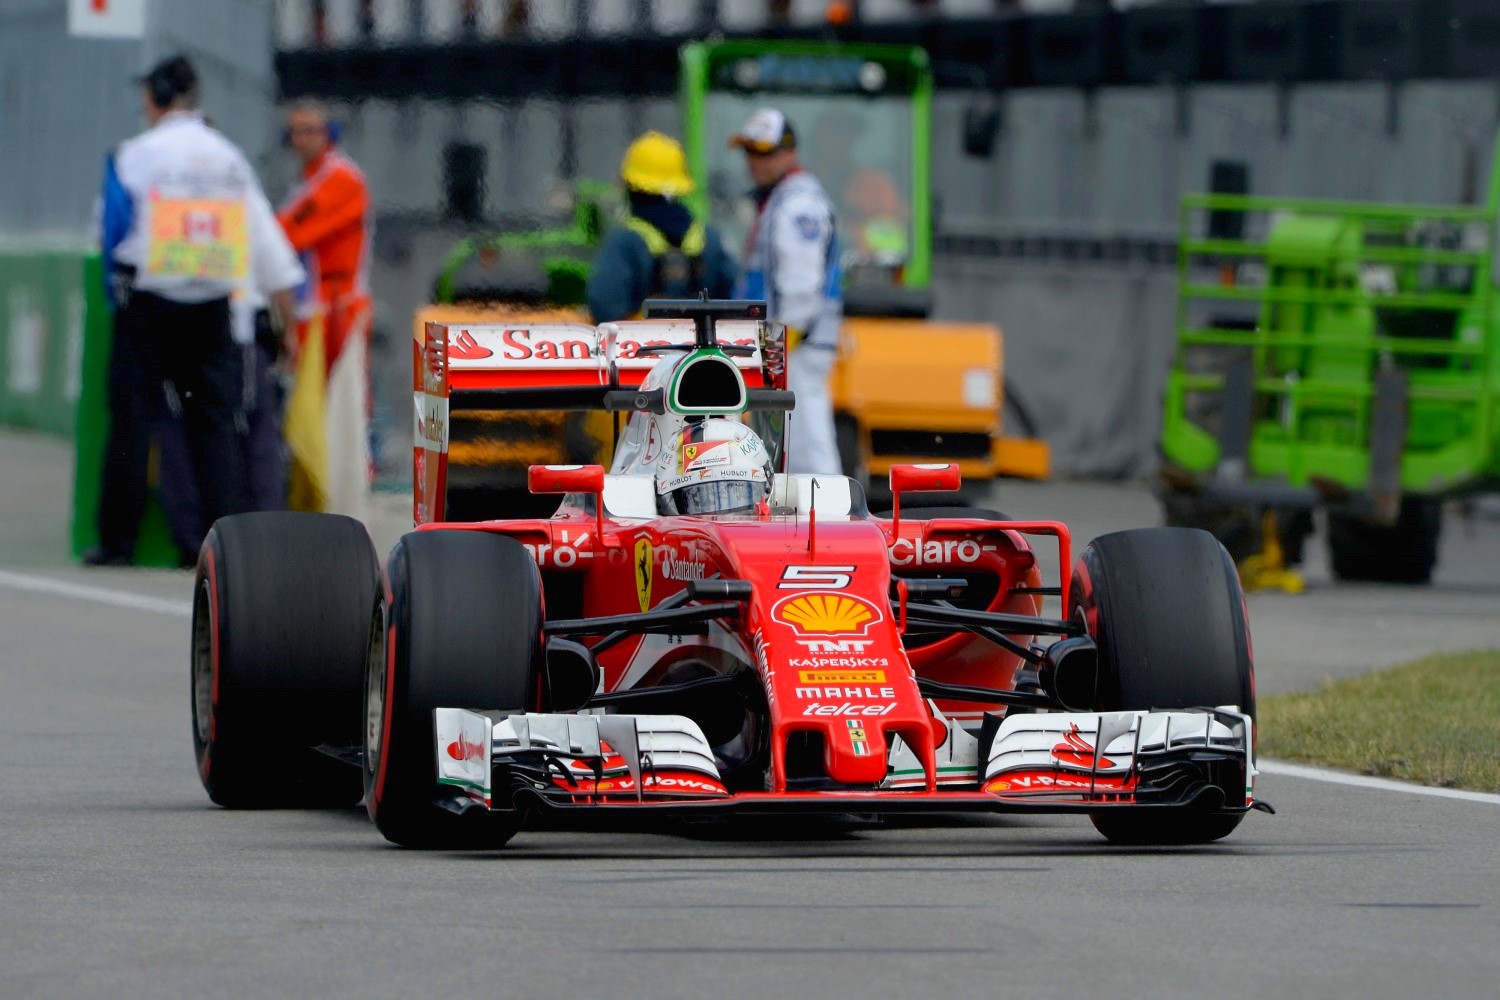 Vettel - close but not enough